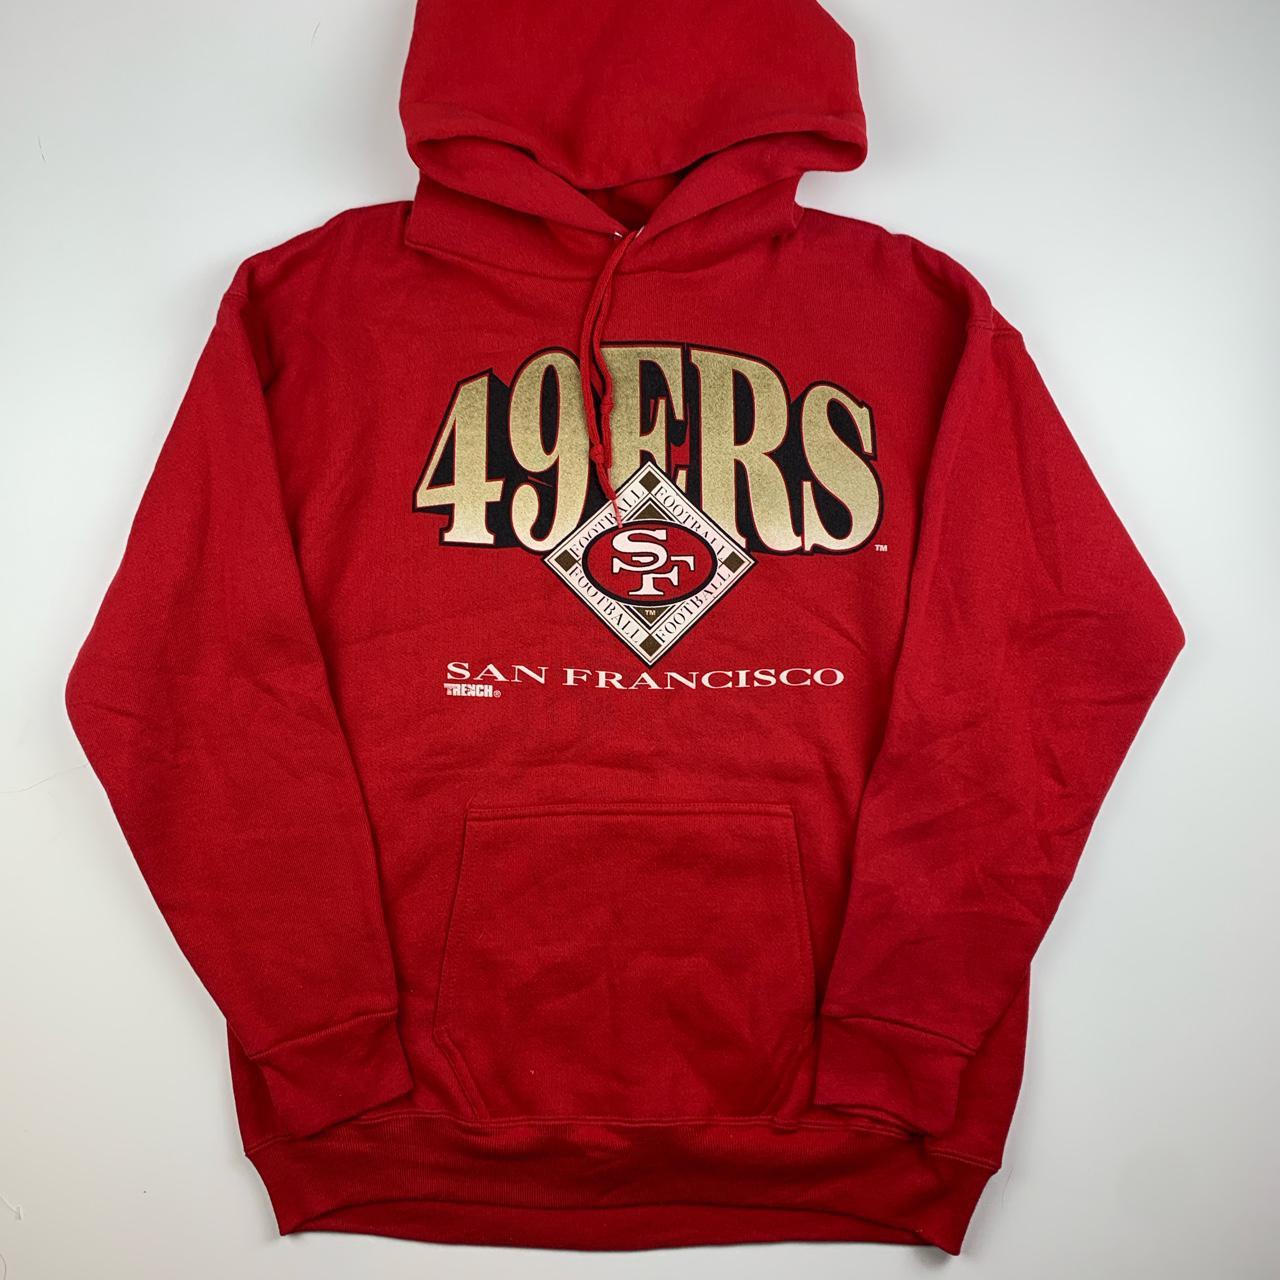 Vintage 90’s San Francisco 49ers Hoodie Super clean... - Depop